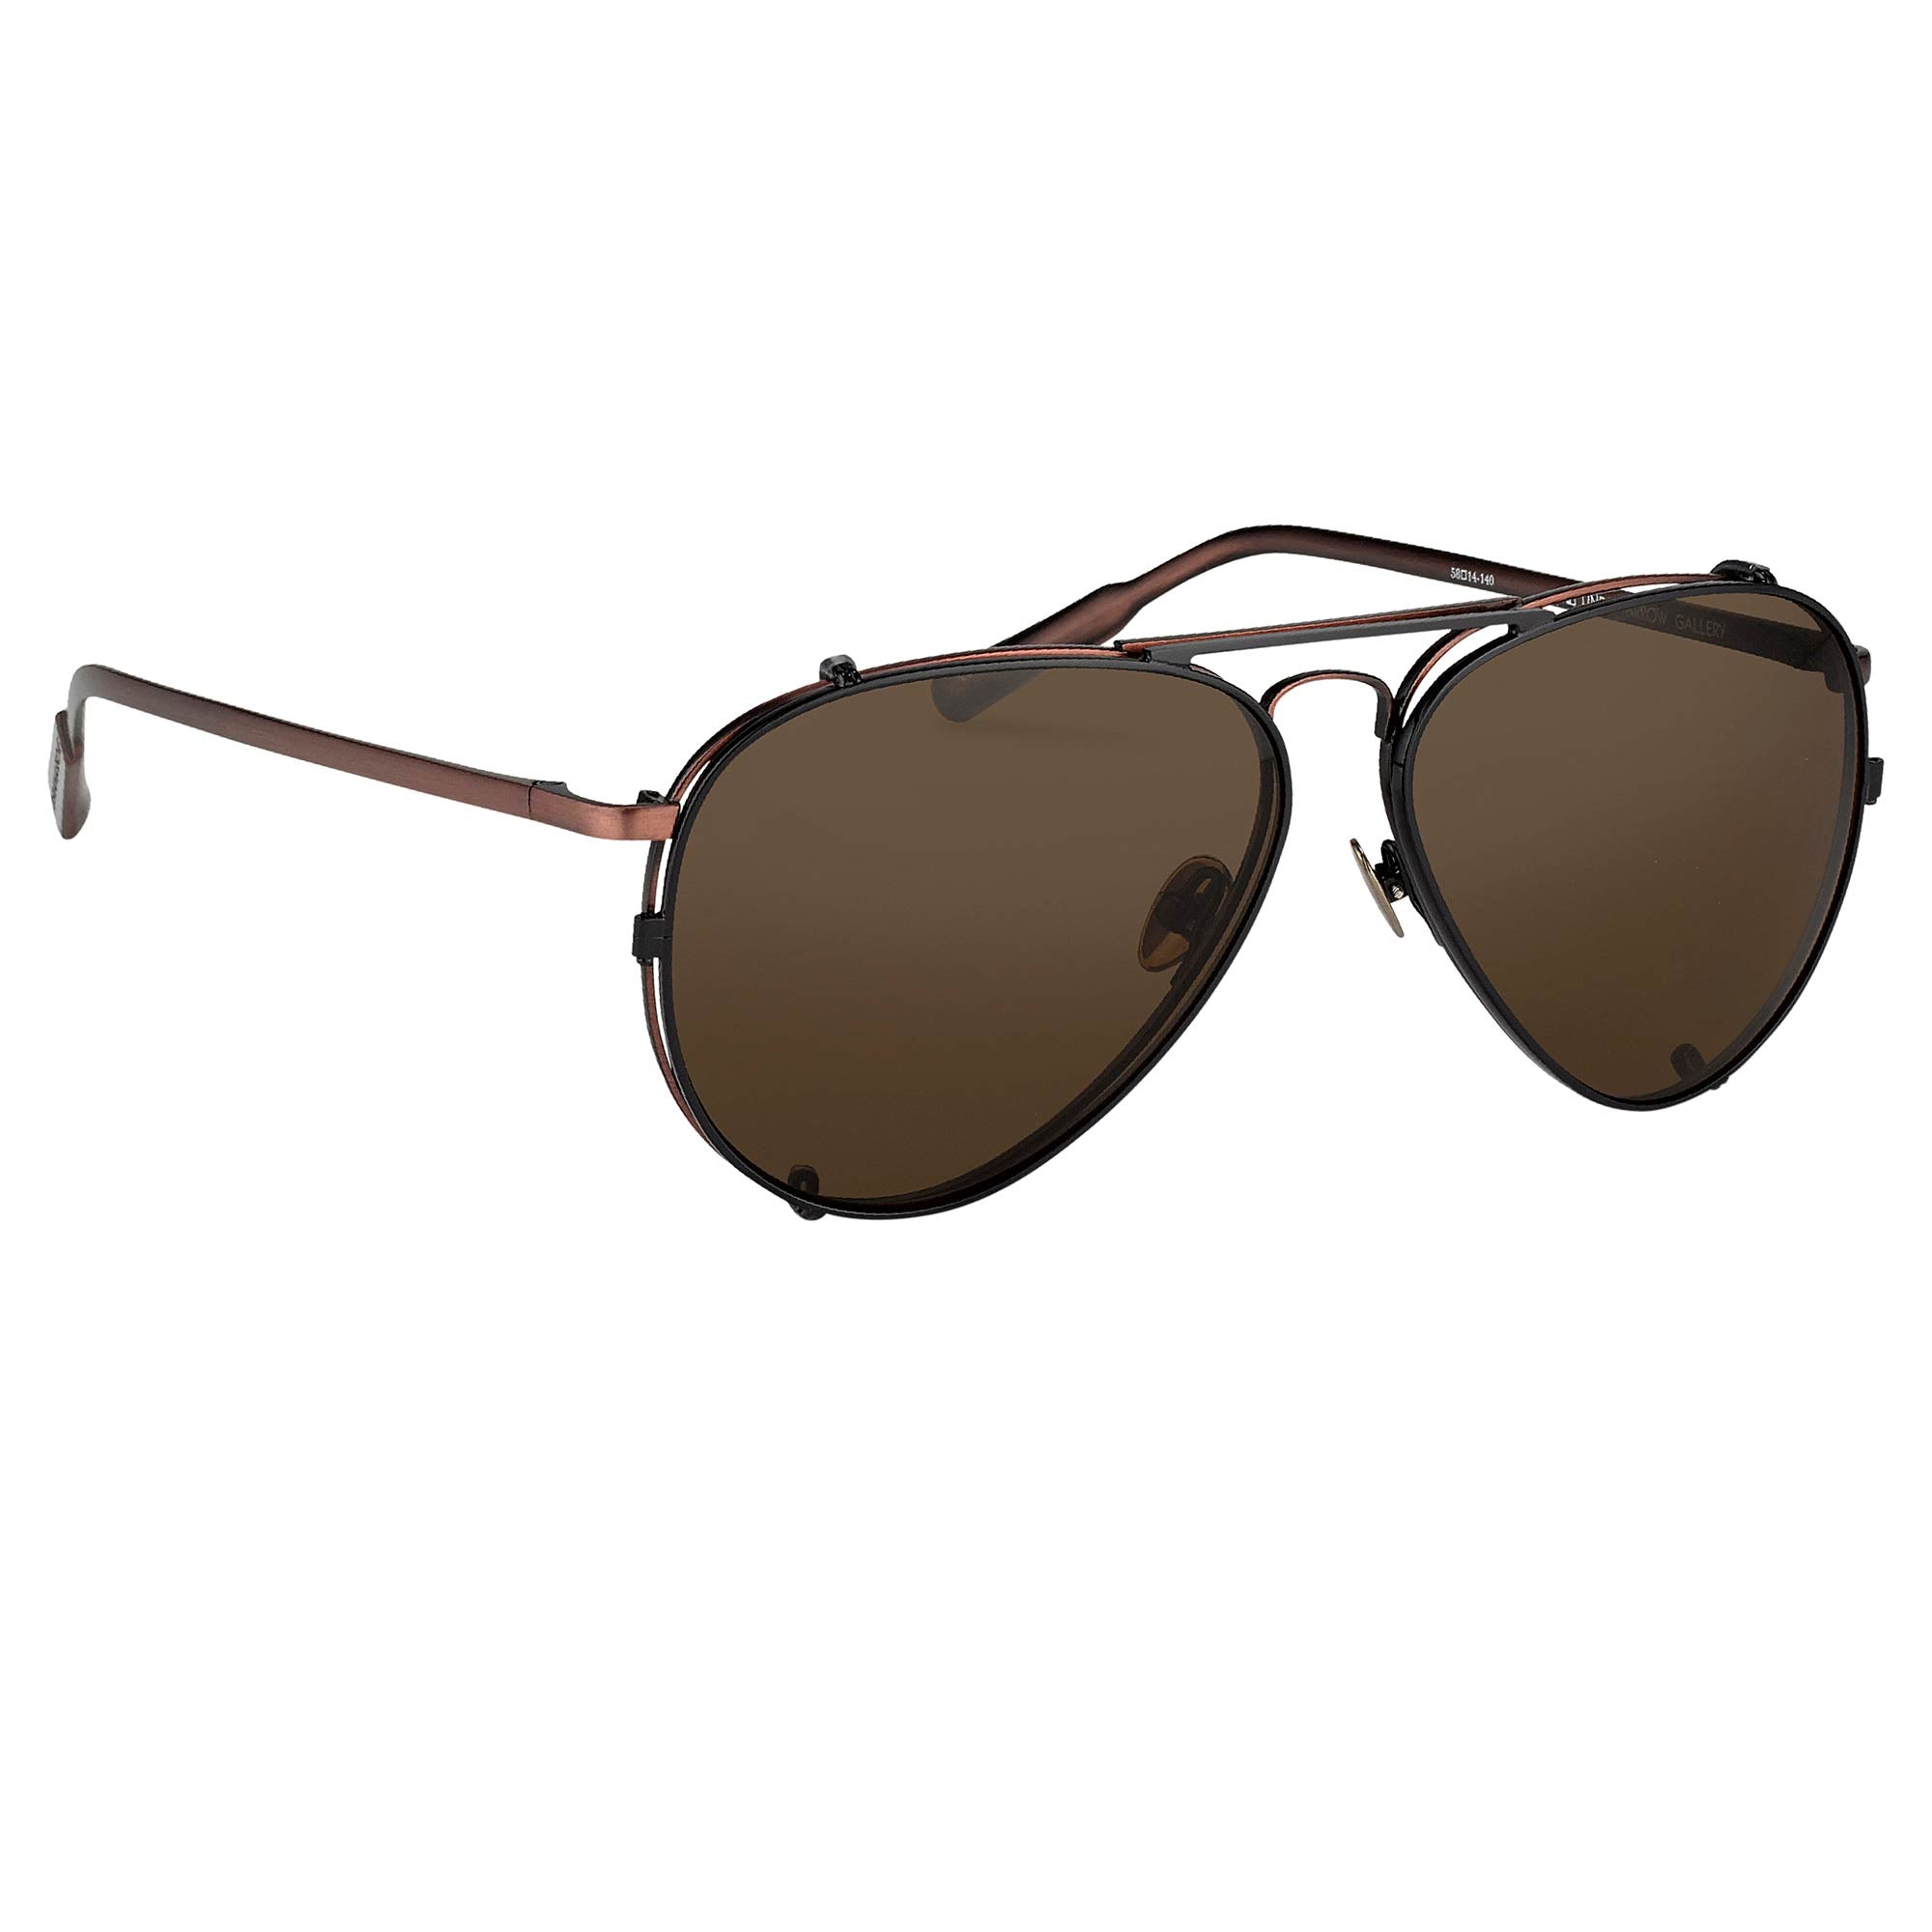 Kris Van Assche Sunglasses D-Frame Brown And Blue